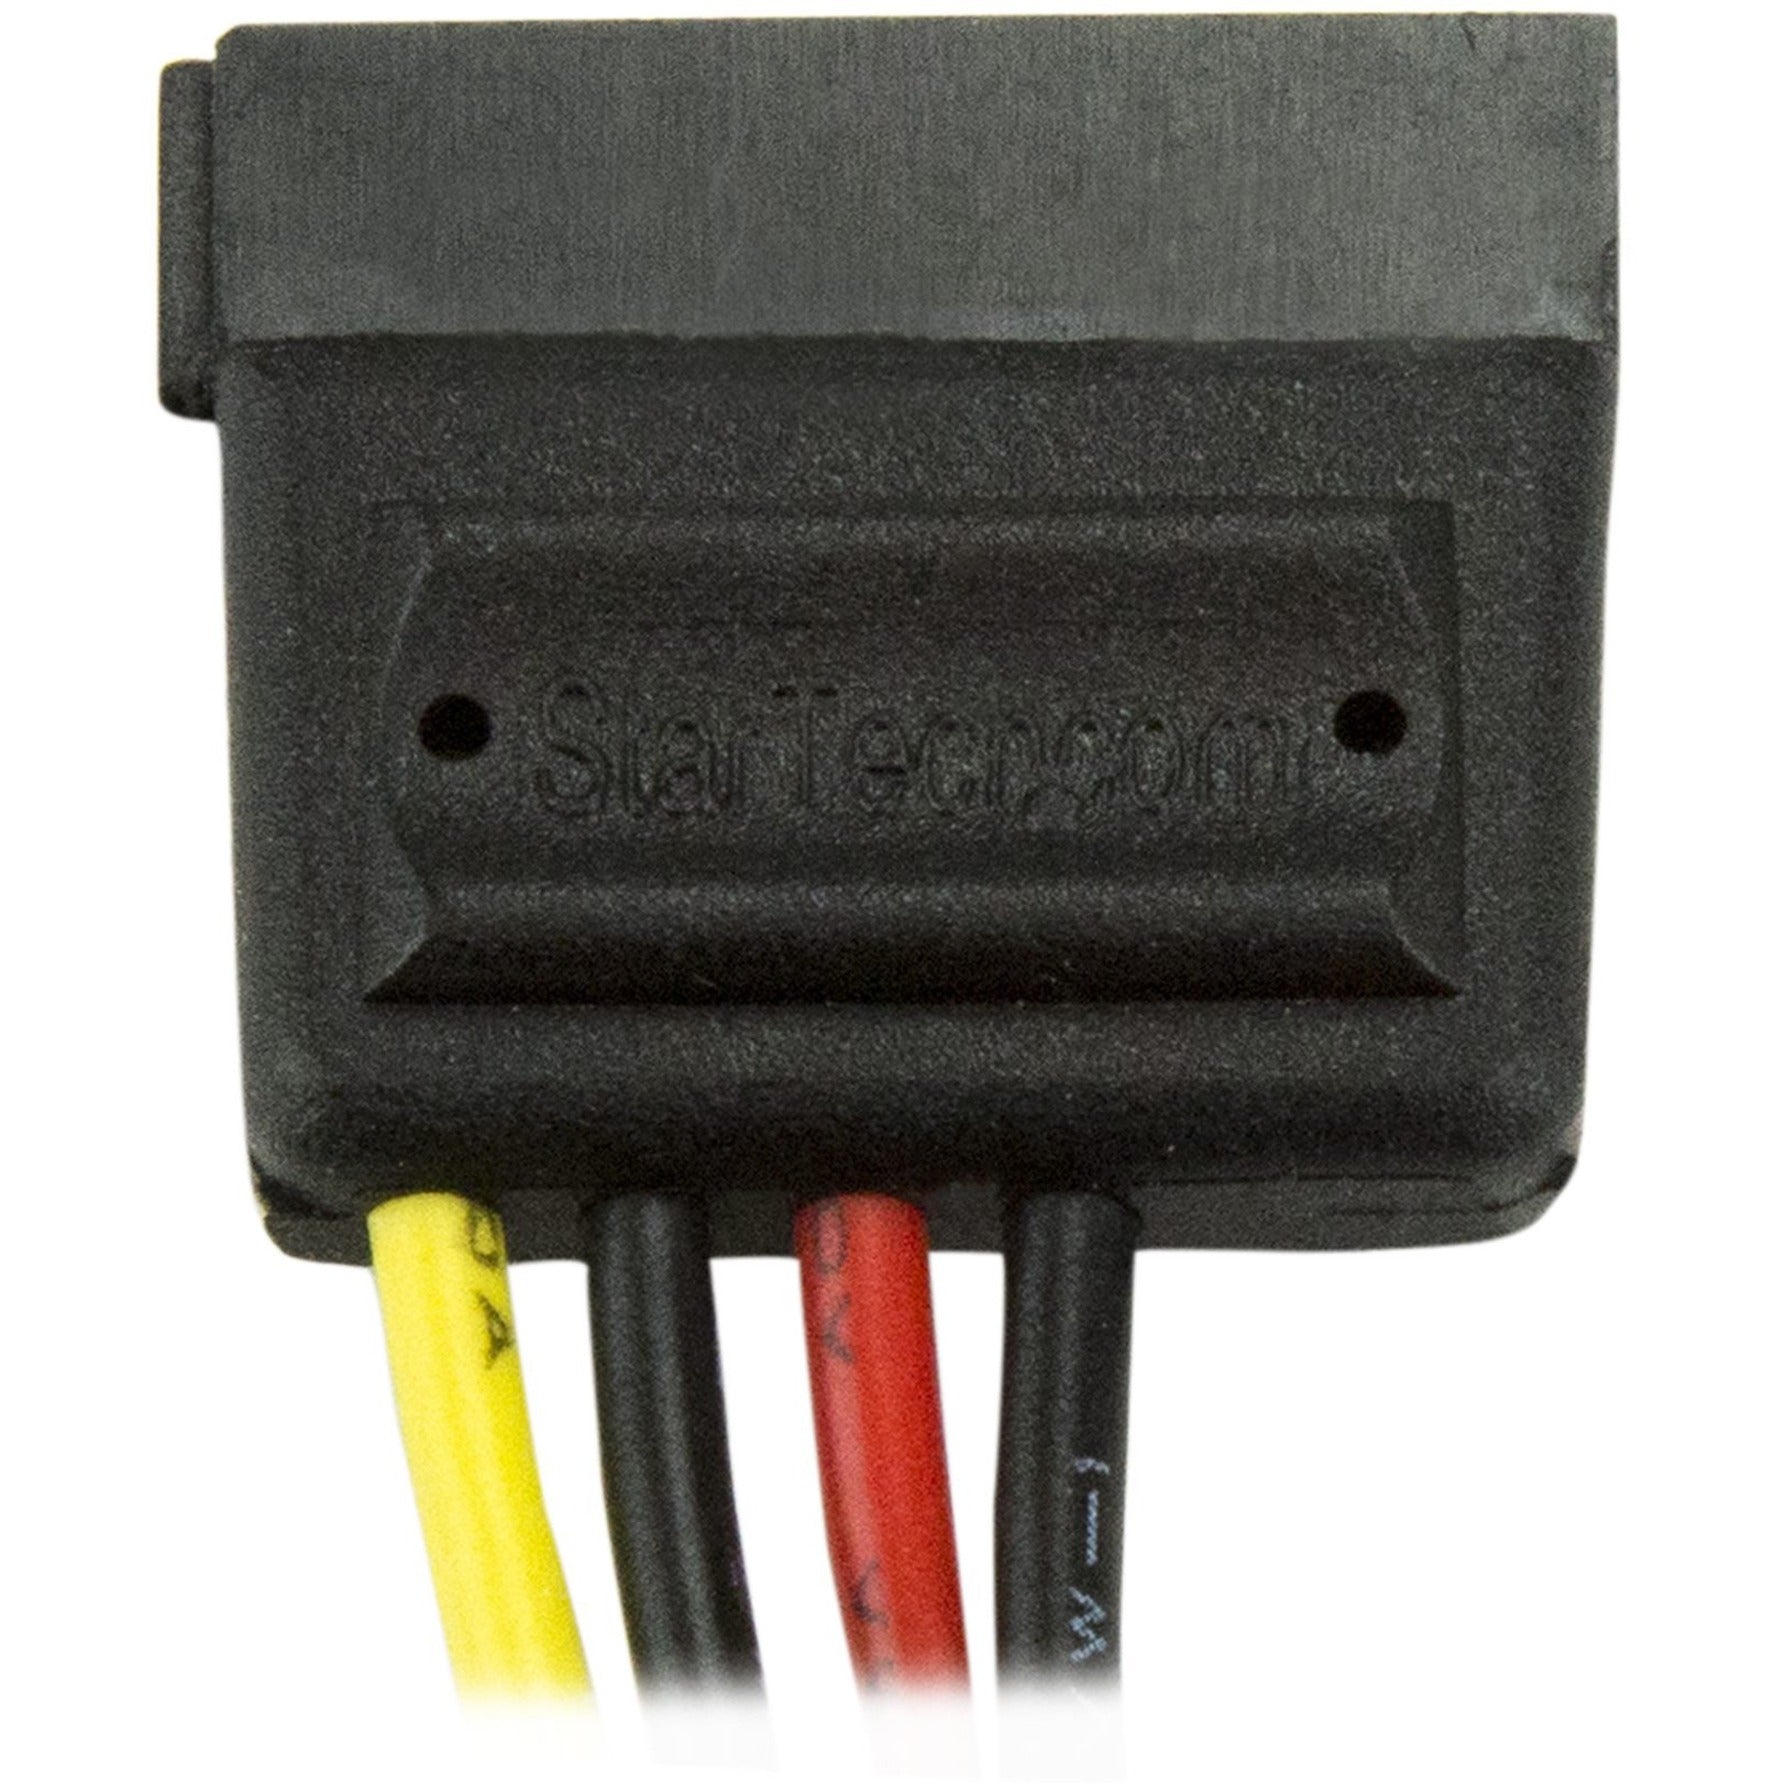 StarTech.com SATAPOWADAP 6in 4 Pin Molex to SATA Power Cable Adapter Verbinden Sie Ihre Festplatte mühelos